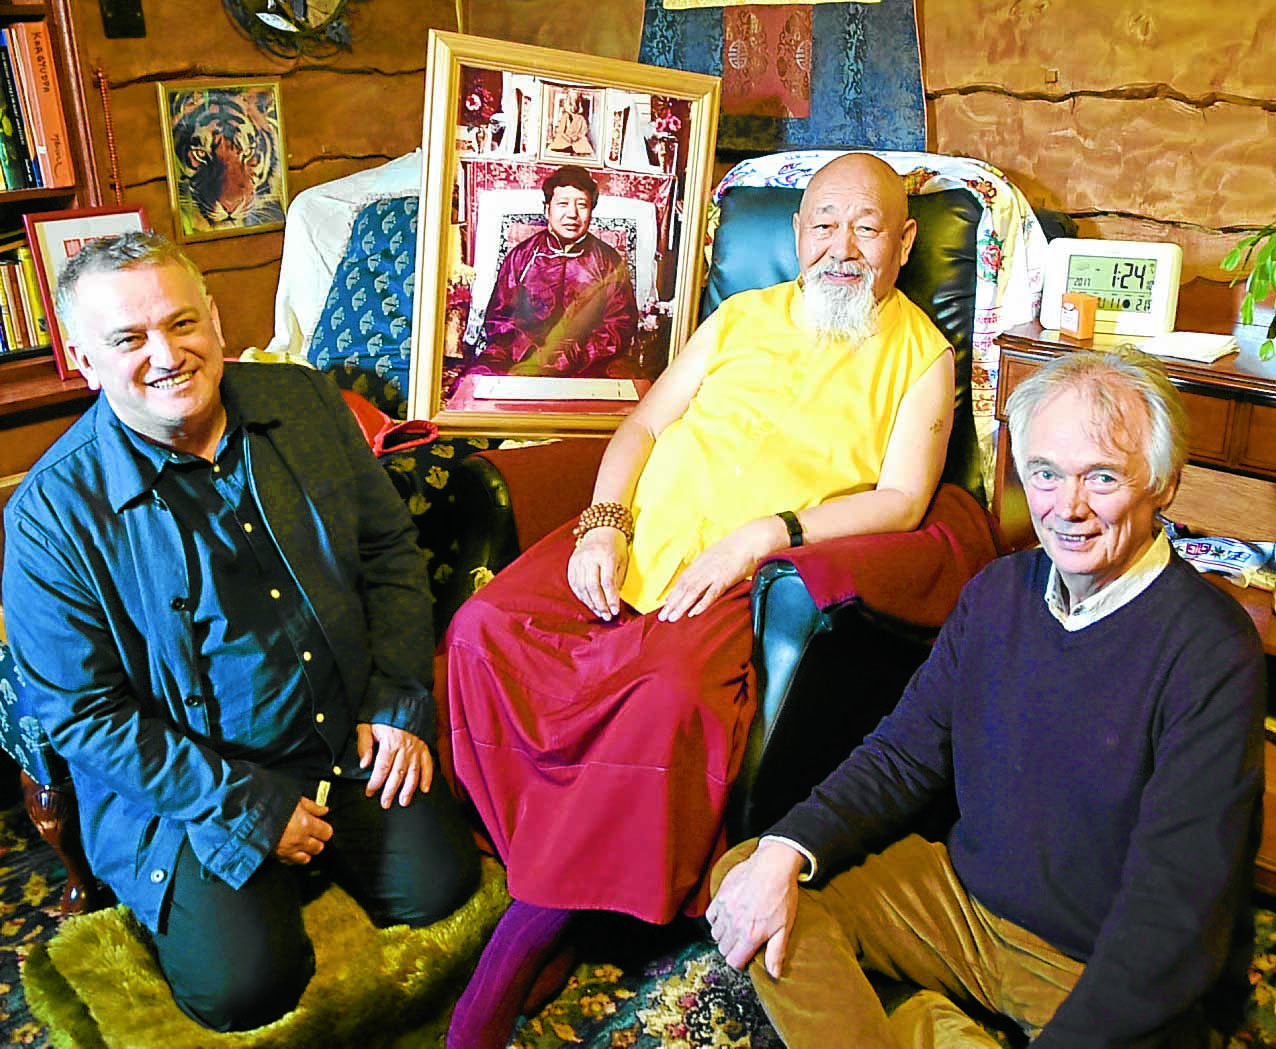 Buddhist leader film premier held in Eskdalemuir